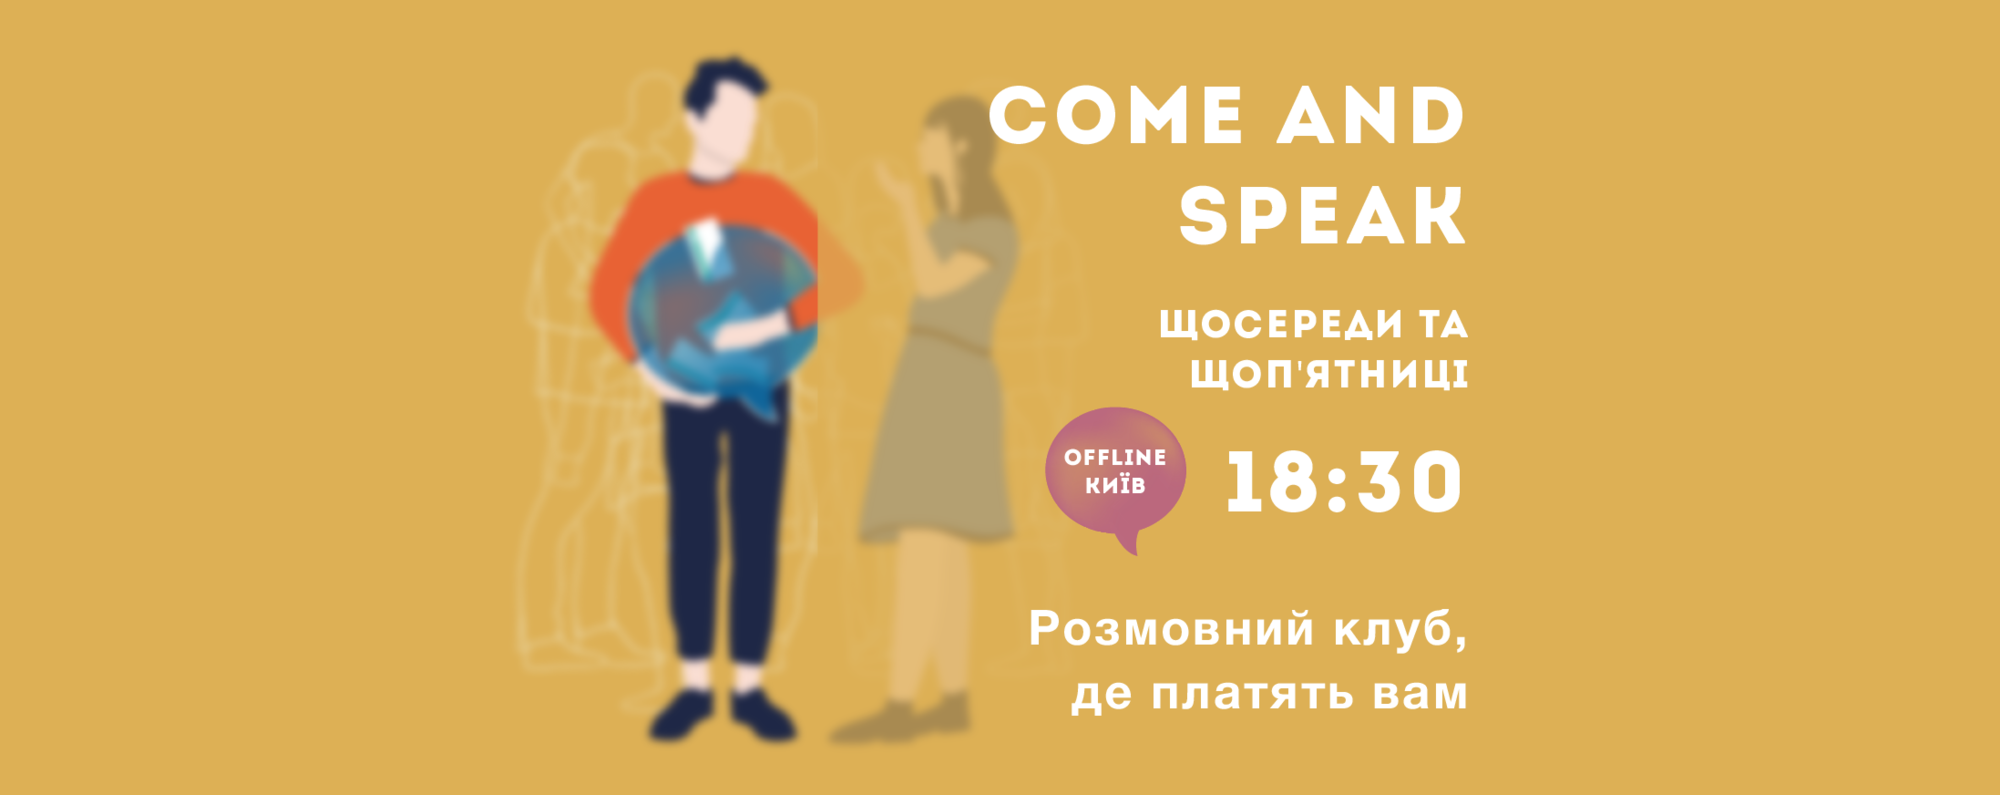 Come and Speak в Киеве: первый разговорный клуб английского